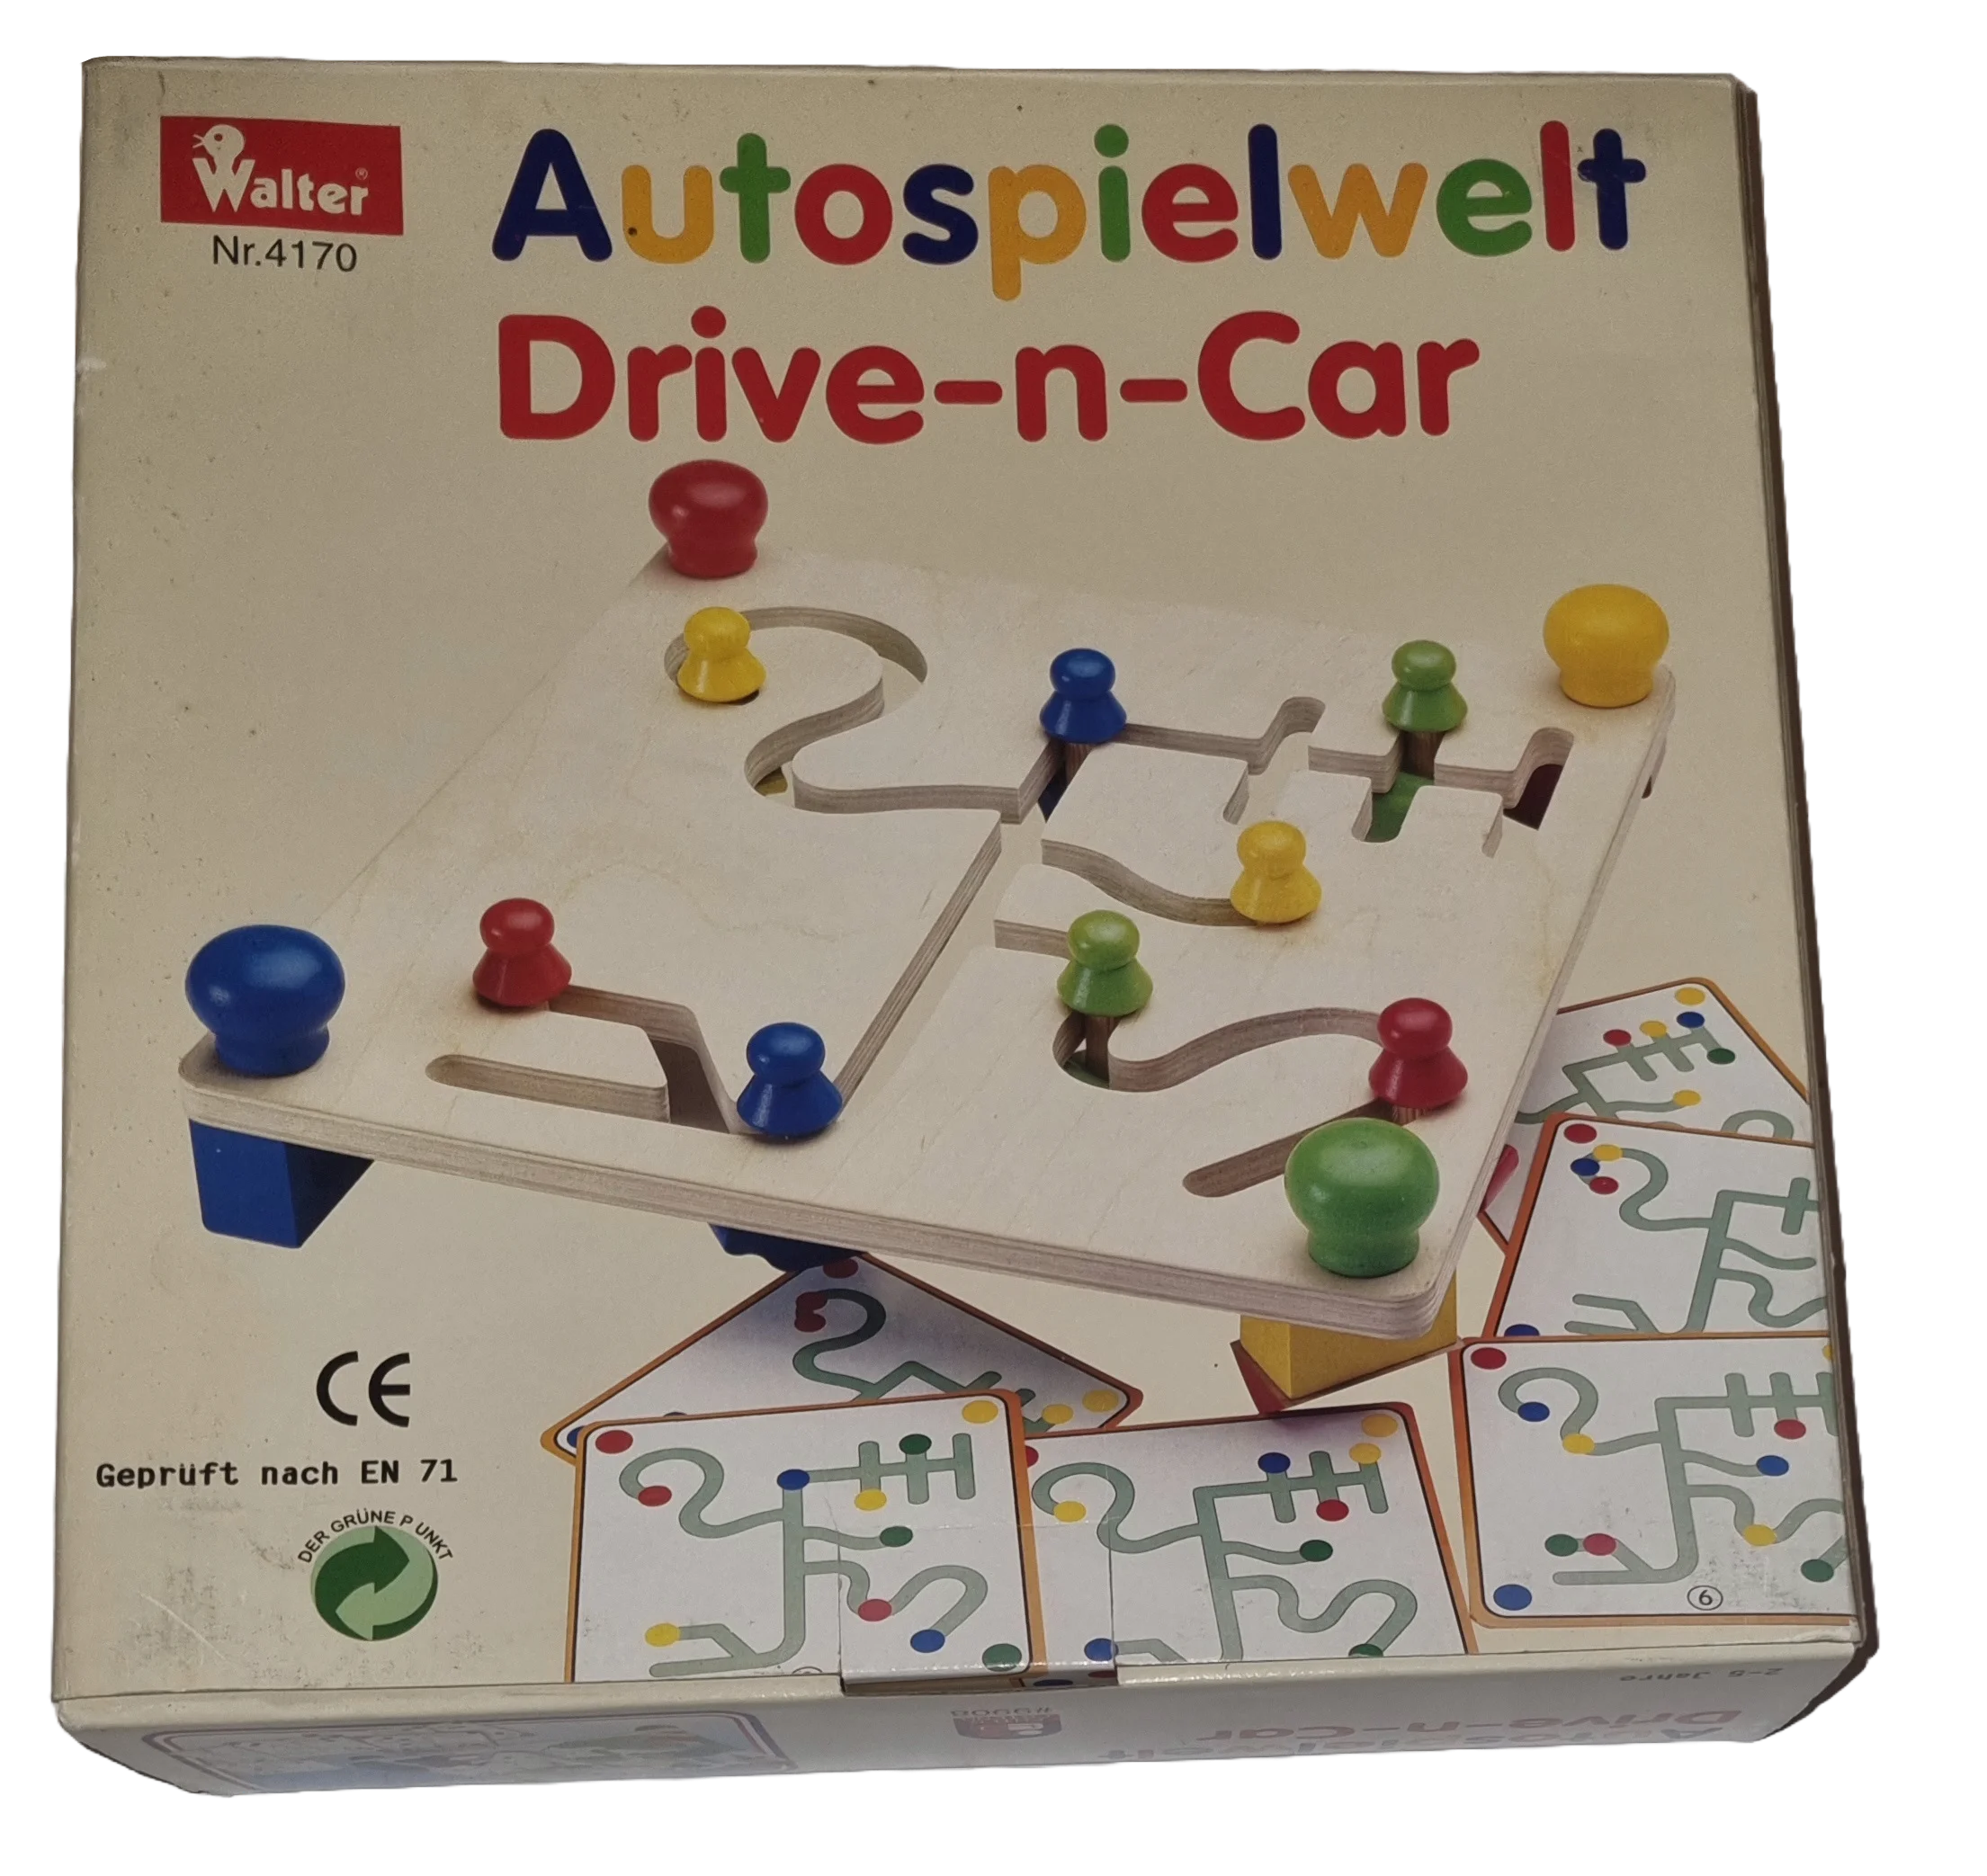 Walter Autospielwelt Drive-n-Car 4170